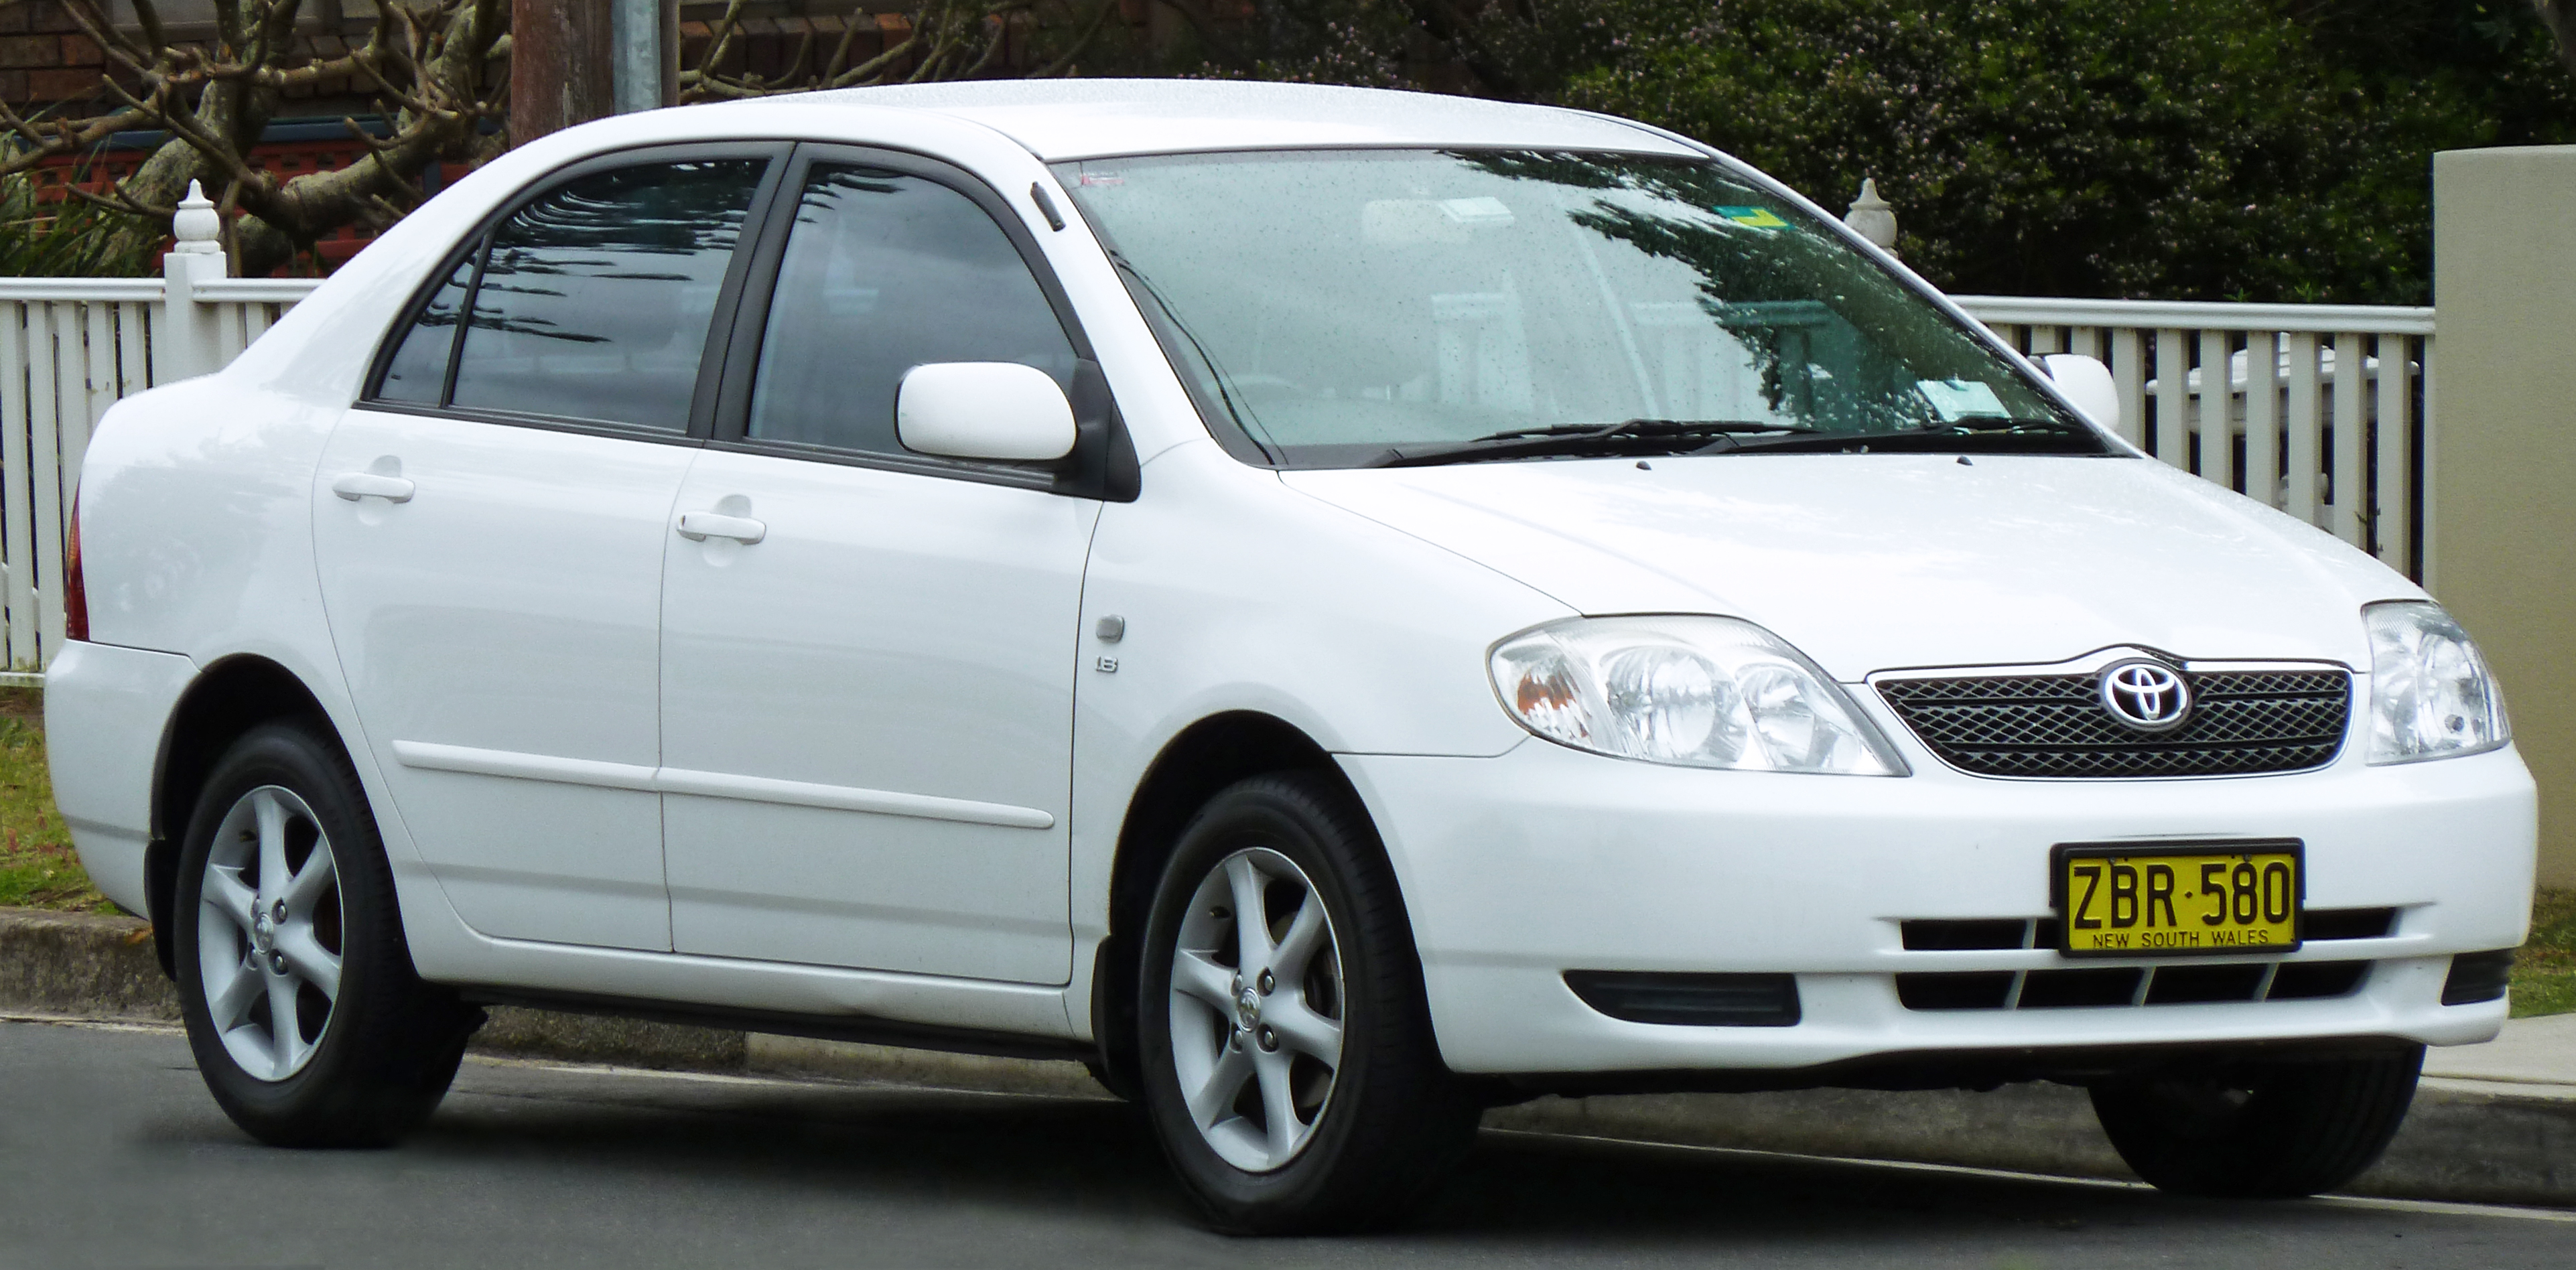 Toyota Corolla (E120) - Wikipedia